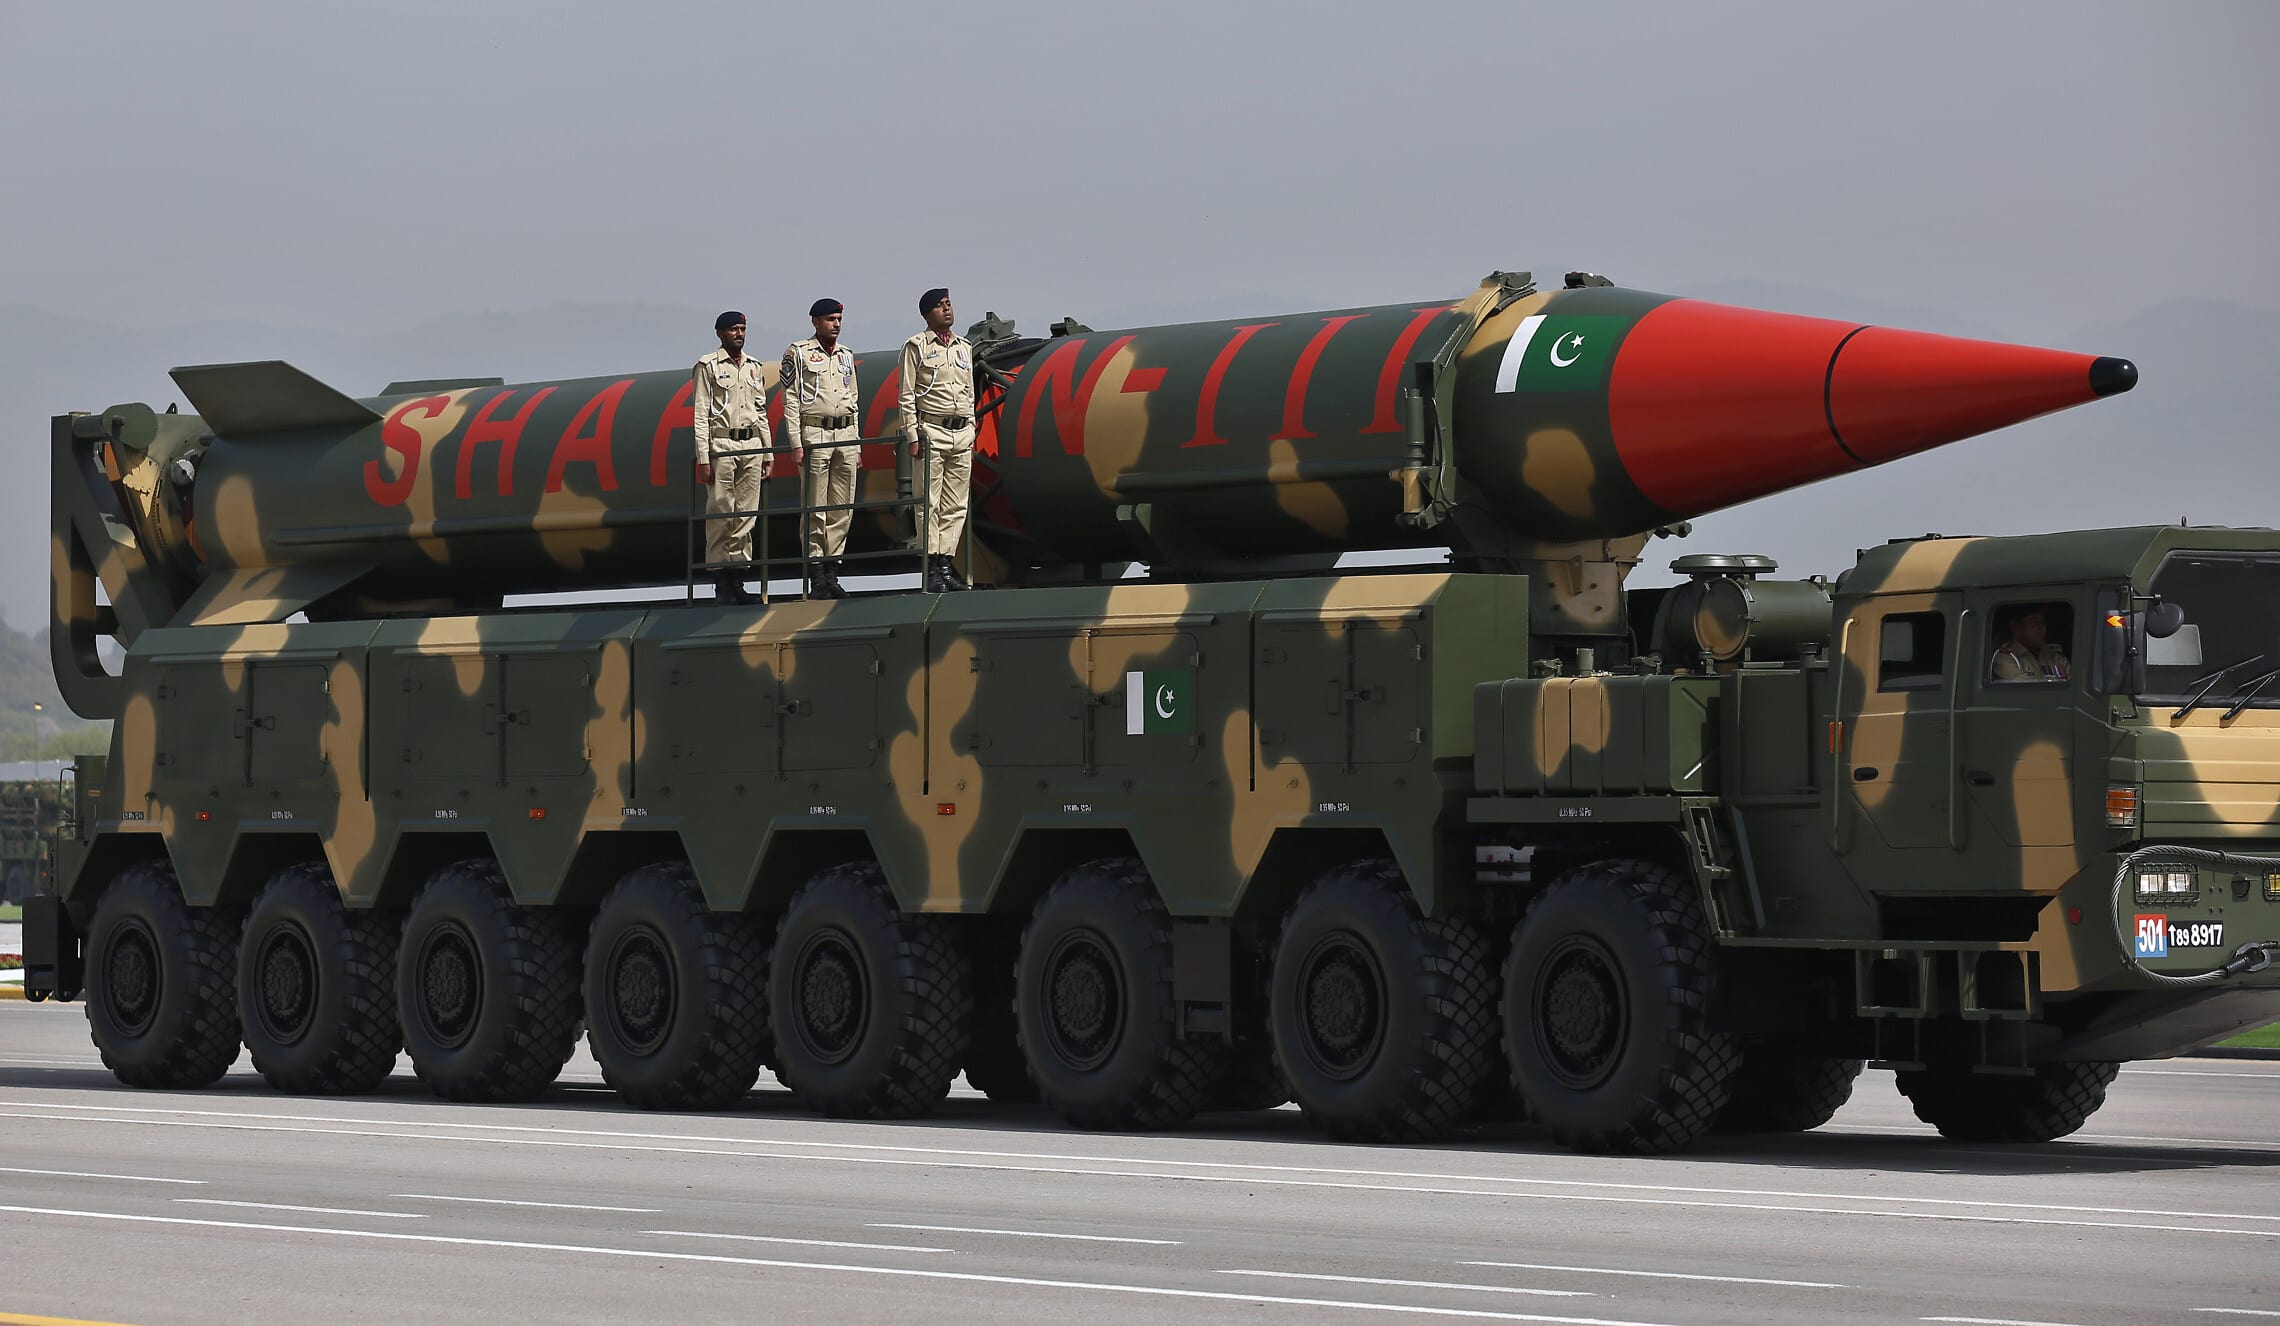 טיל שאהין 3 בעל ראש נפץ גרעיני מתוצרת פקיסטן, מוצג בתהלוכה צבאית בפקיסטן,25 במרץ 2021 (צילום: AP Photo/Anjum Naveed)